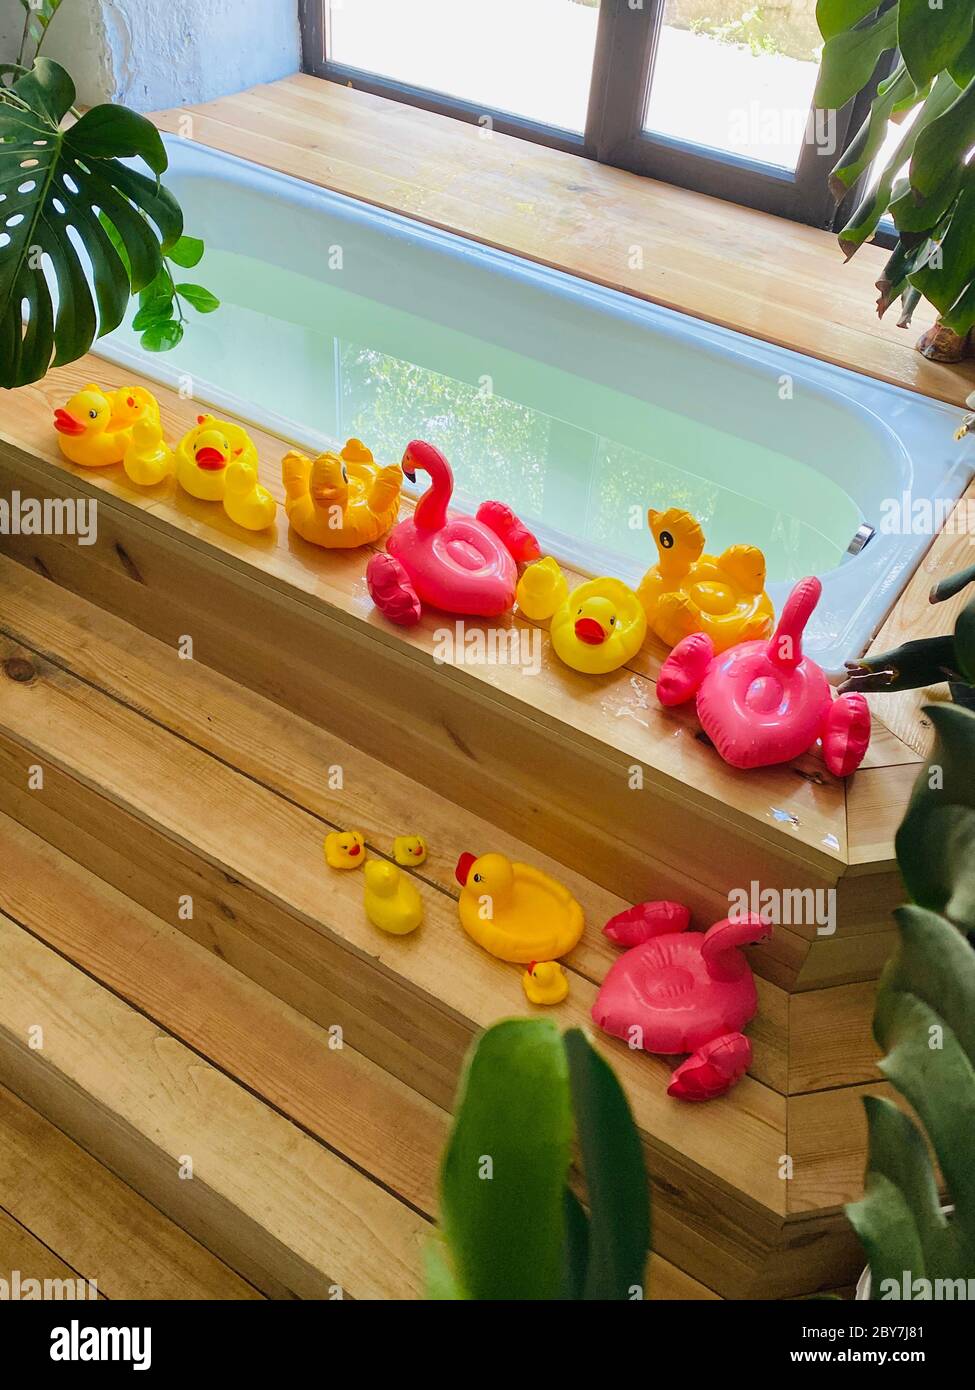 Los juguetes para niños en forma de patos y flamencos están al lado de una  bañera llena de agua para bañar a un niño en el fondo de las plantas de casa